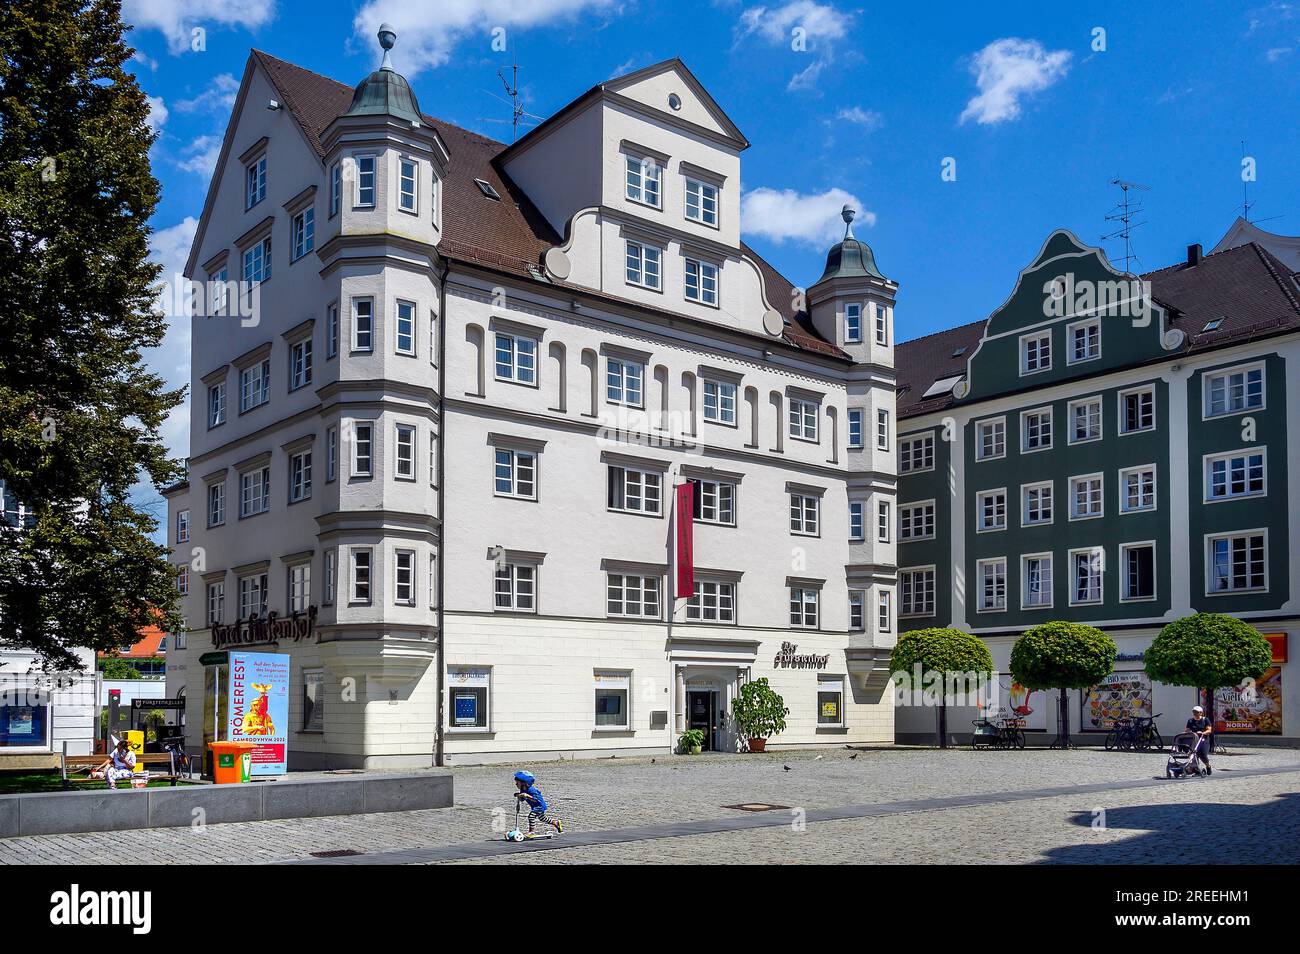 Hotel, corte reale, edificio protetto dal patrimonio culturale, Kempten, Allgaeu, Baviera, Germania Foto Stock